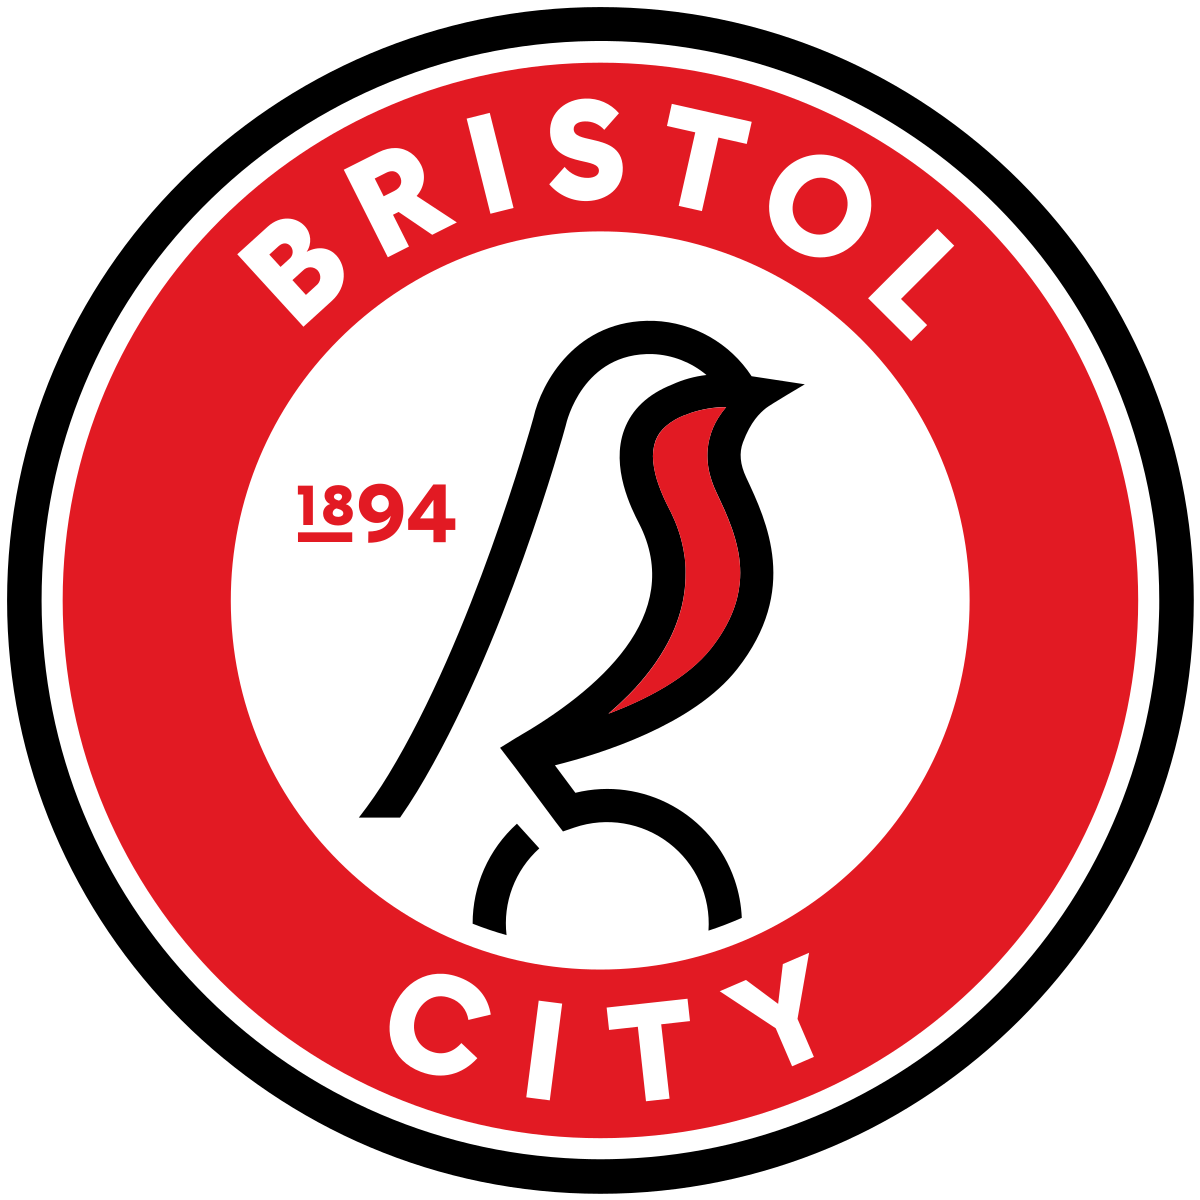 Bristol City v Millwall - Hospitality